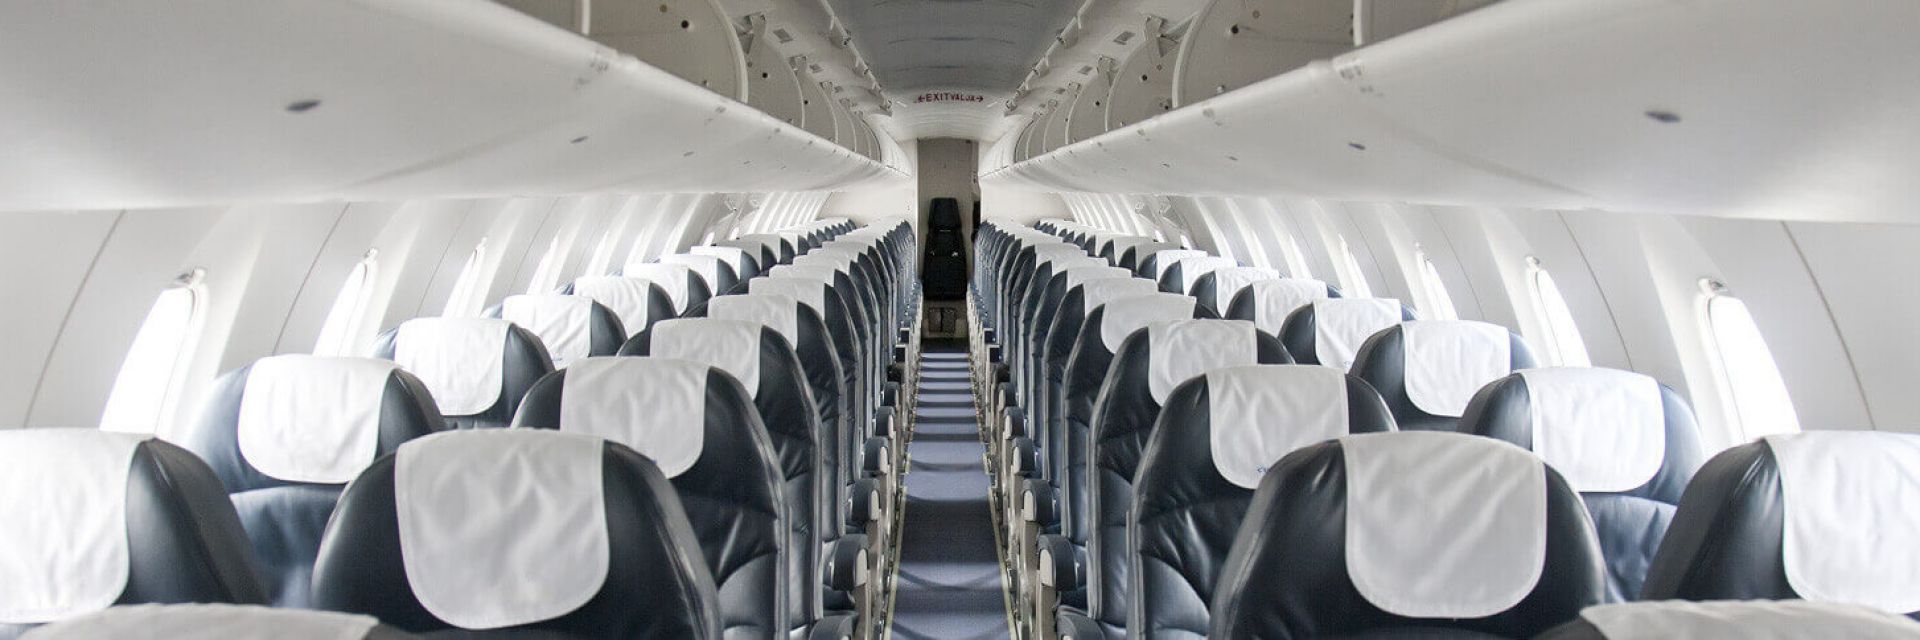 Assento de avião: quais são eles e como escolher o seu?